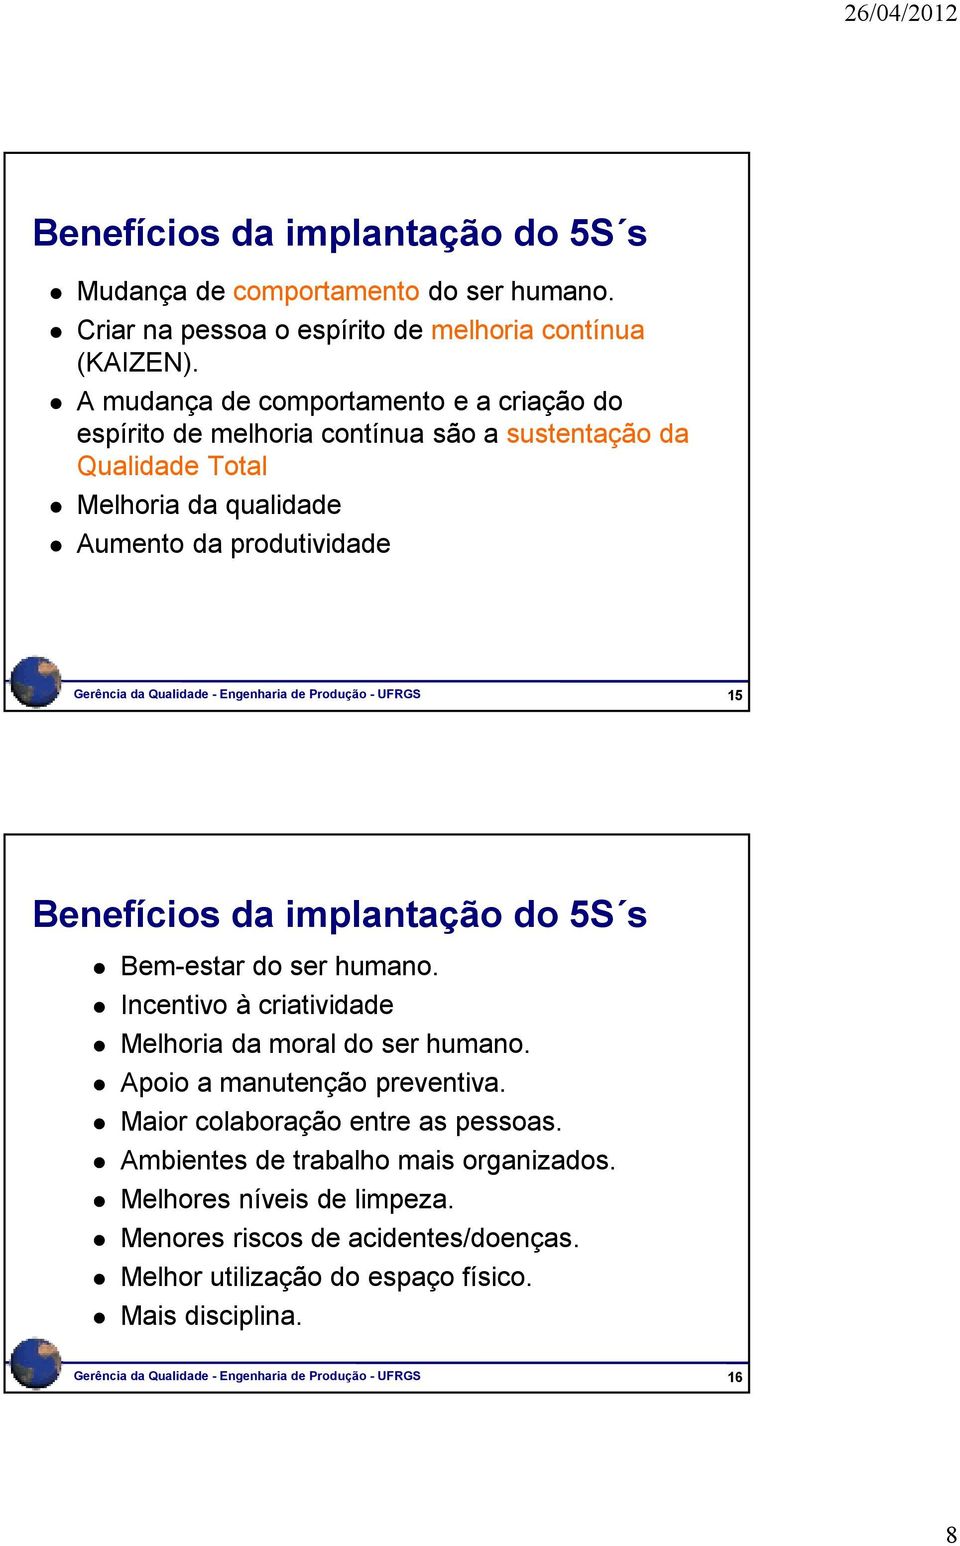 Engenharia de Produção - UFRGS 15 Benefícios da implantação do 5S s Bem-estar do ser humano. Incentivo à criatividade Melhoria da moral do ser humano. Apoio a manutenção preventiva.